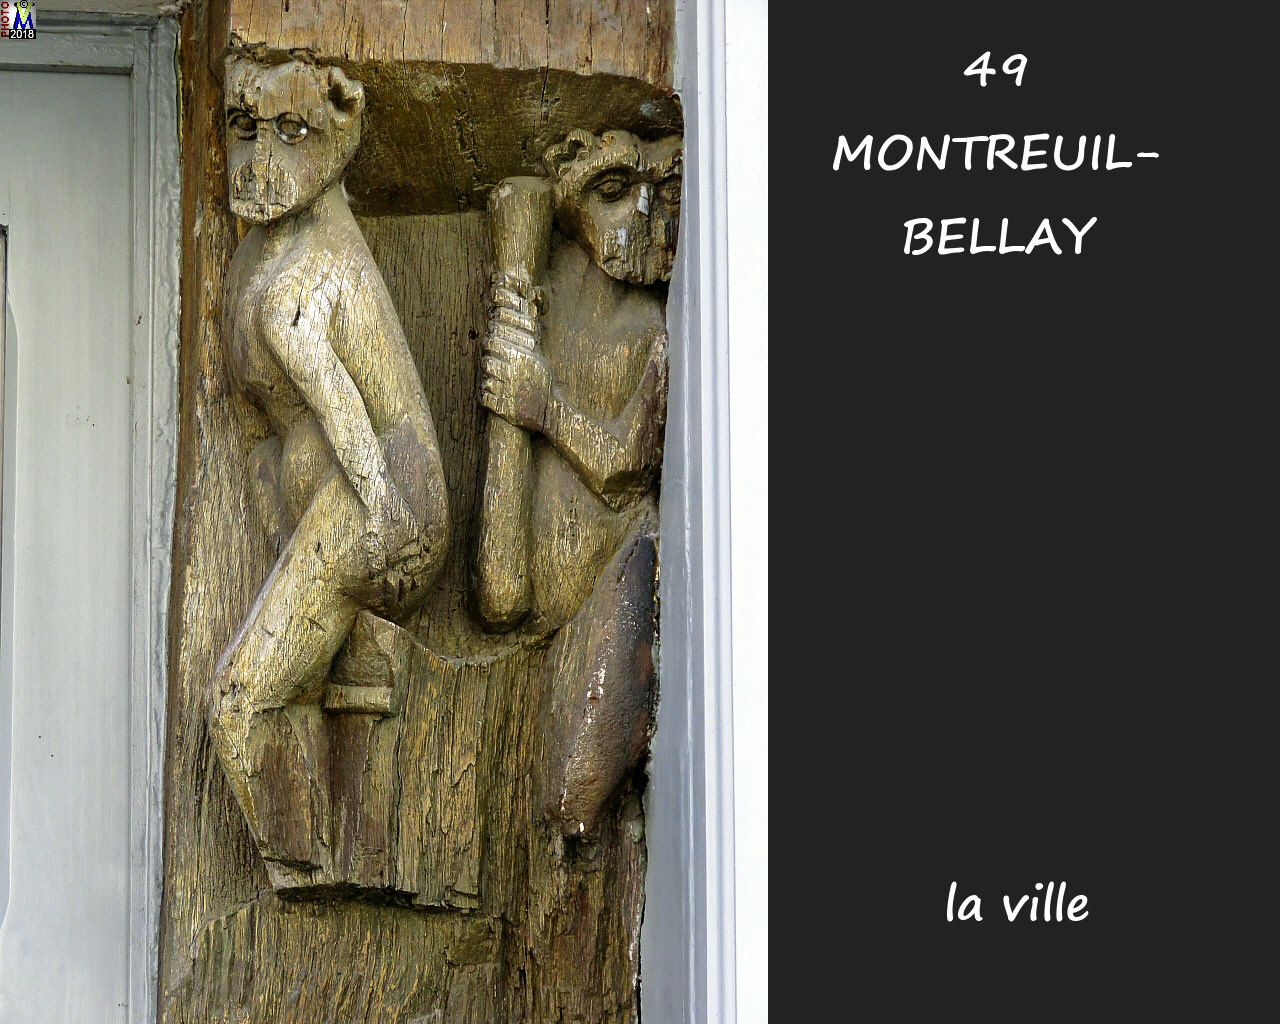 49MONTREUIL-BELLAY_ville_1020.jpg